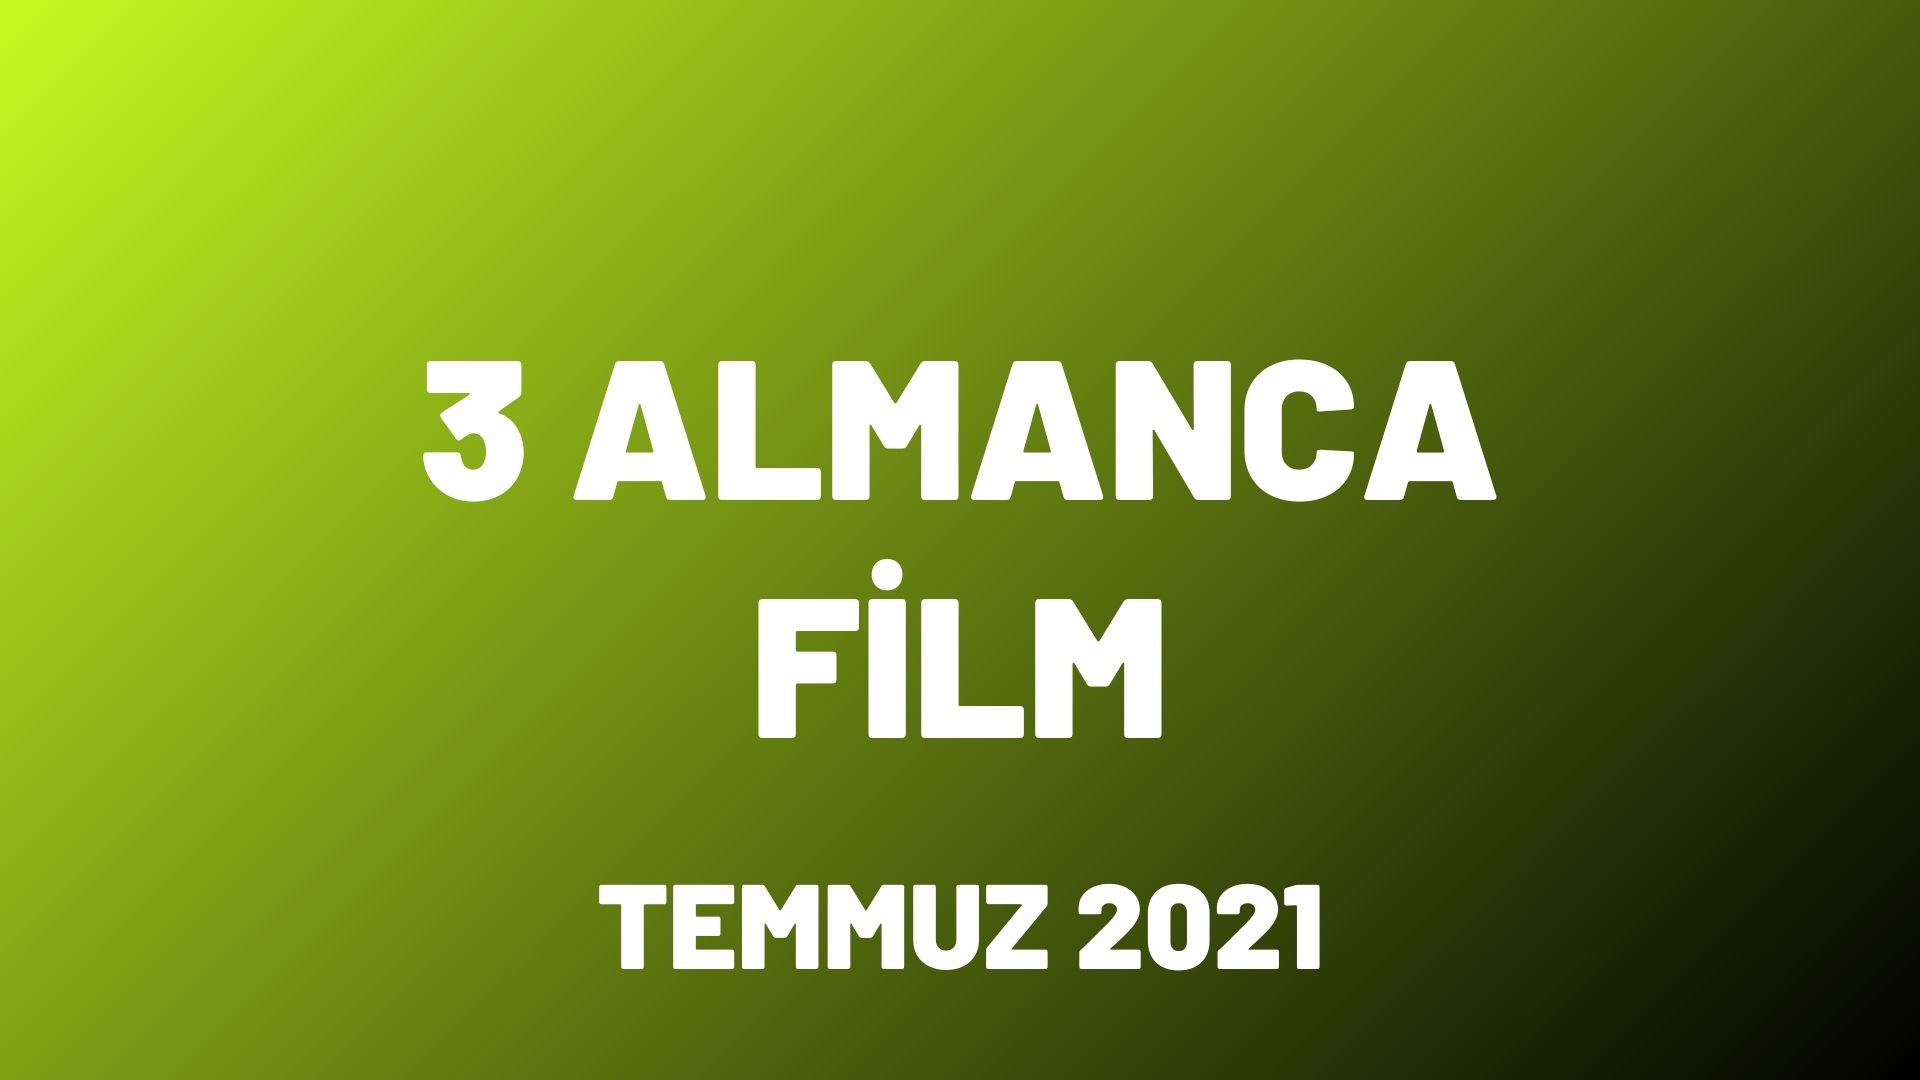 Almanca Film Önerileri Temmuz 2021